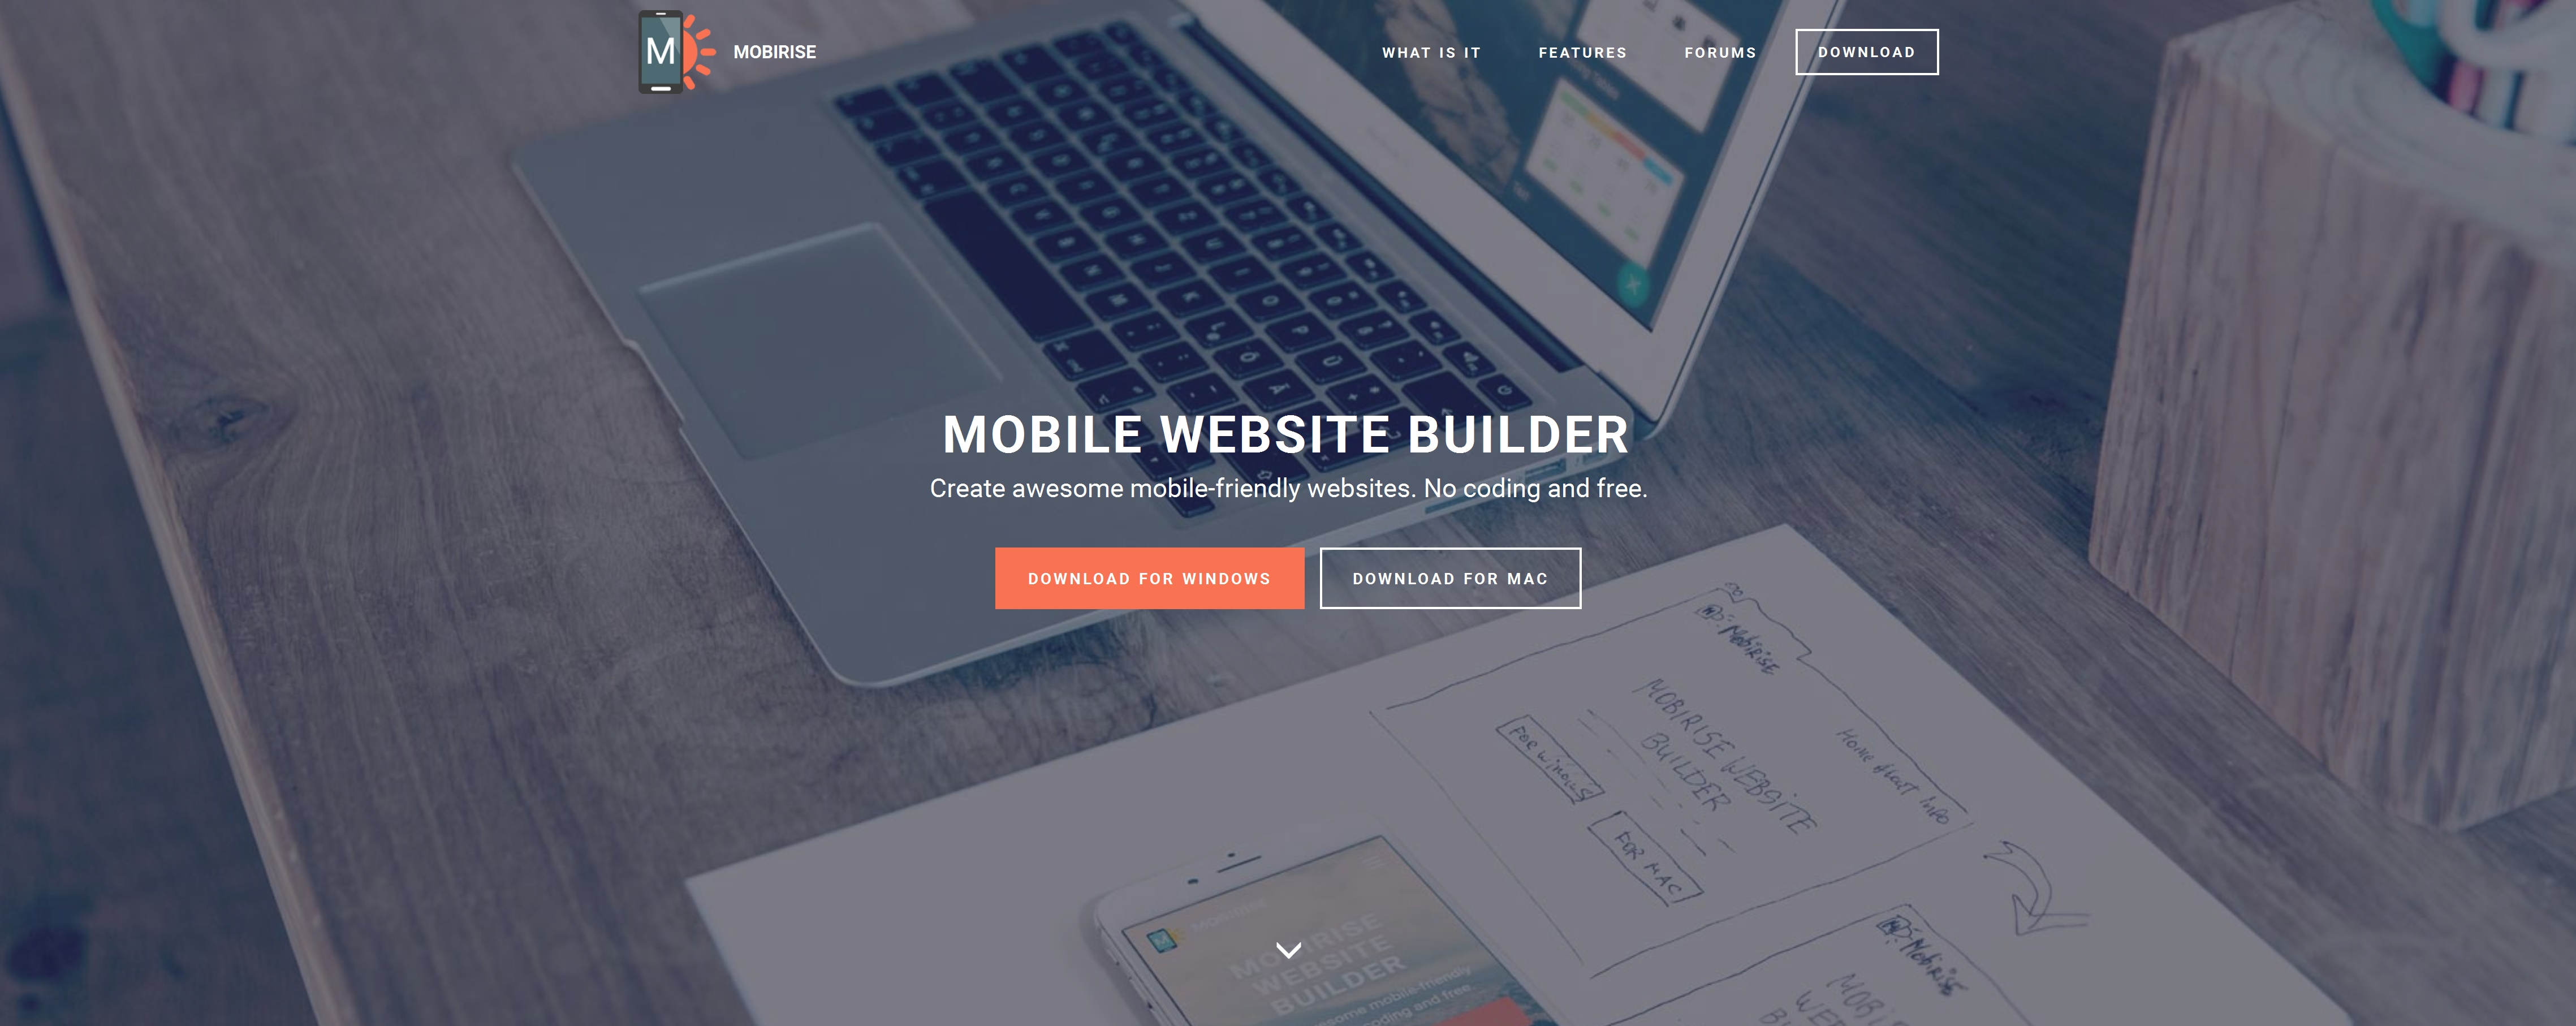 Best Mobile Website Builder 